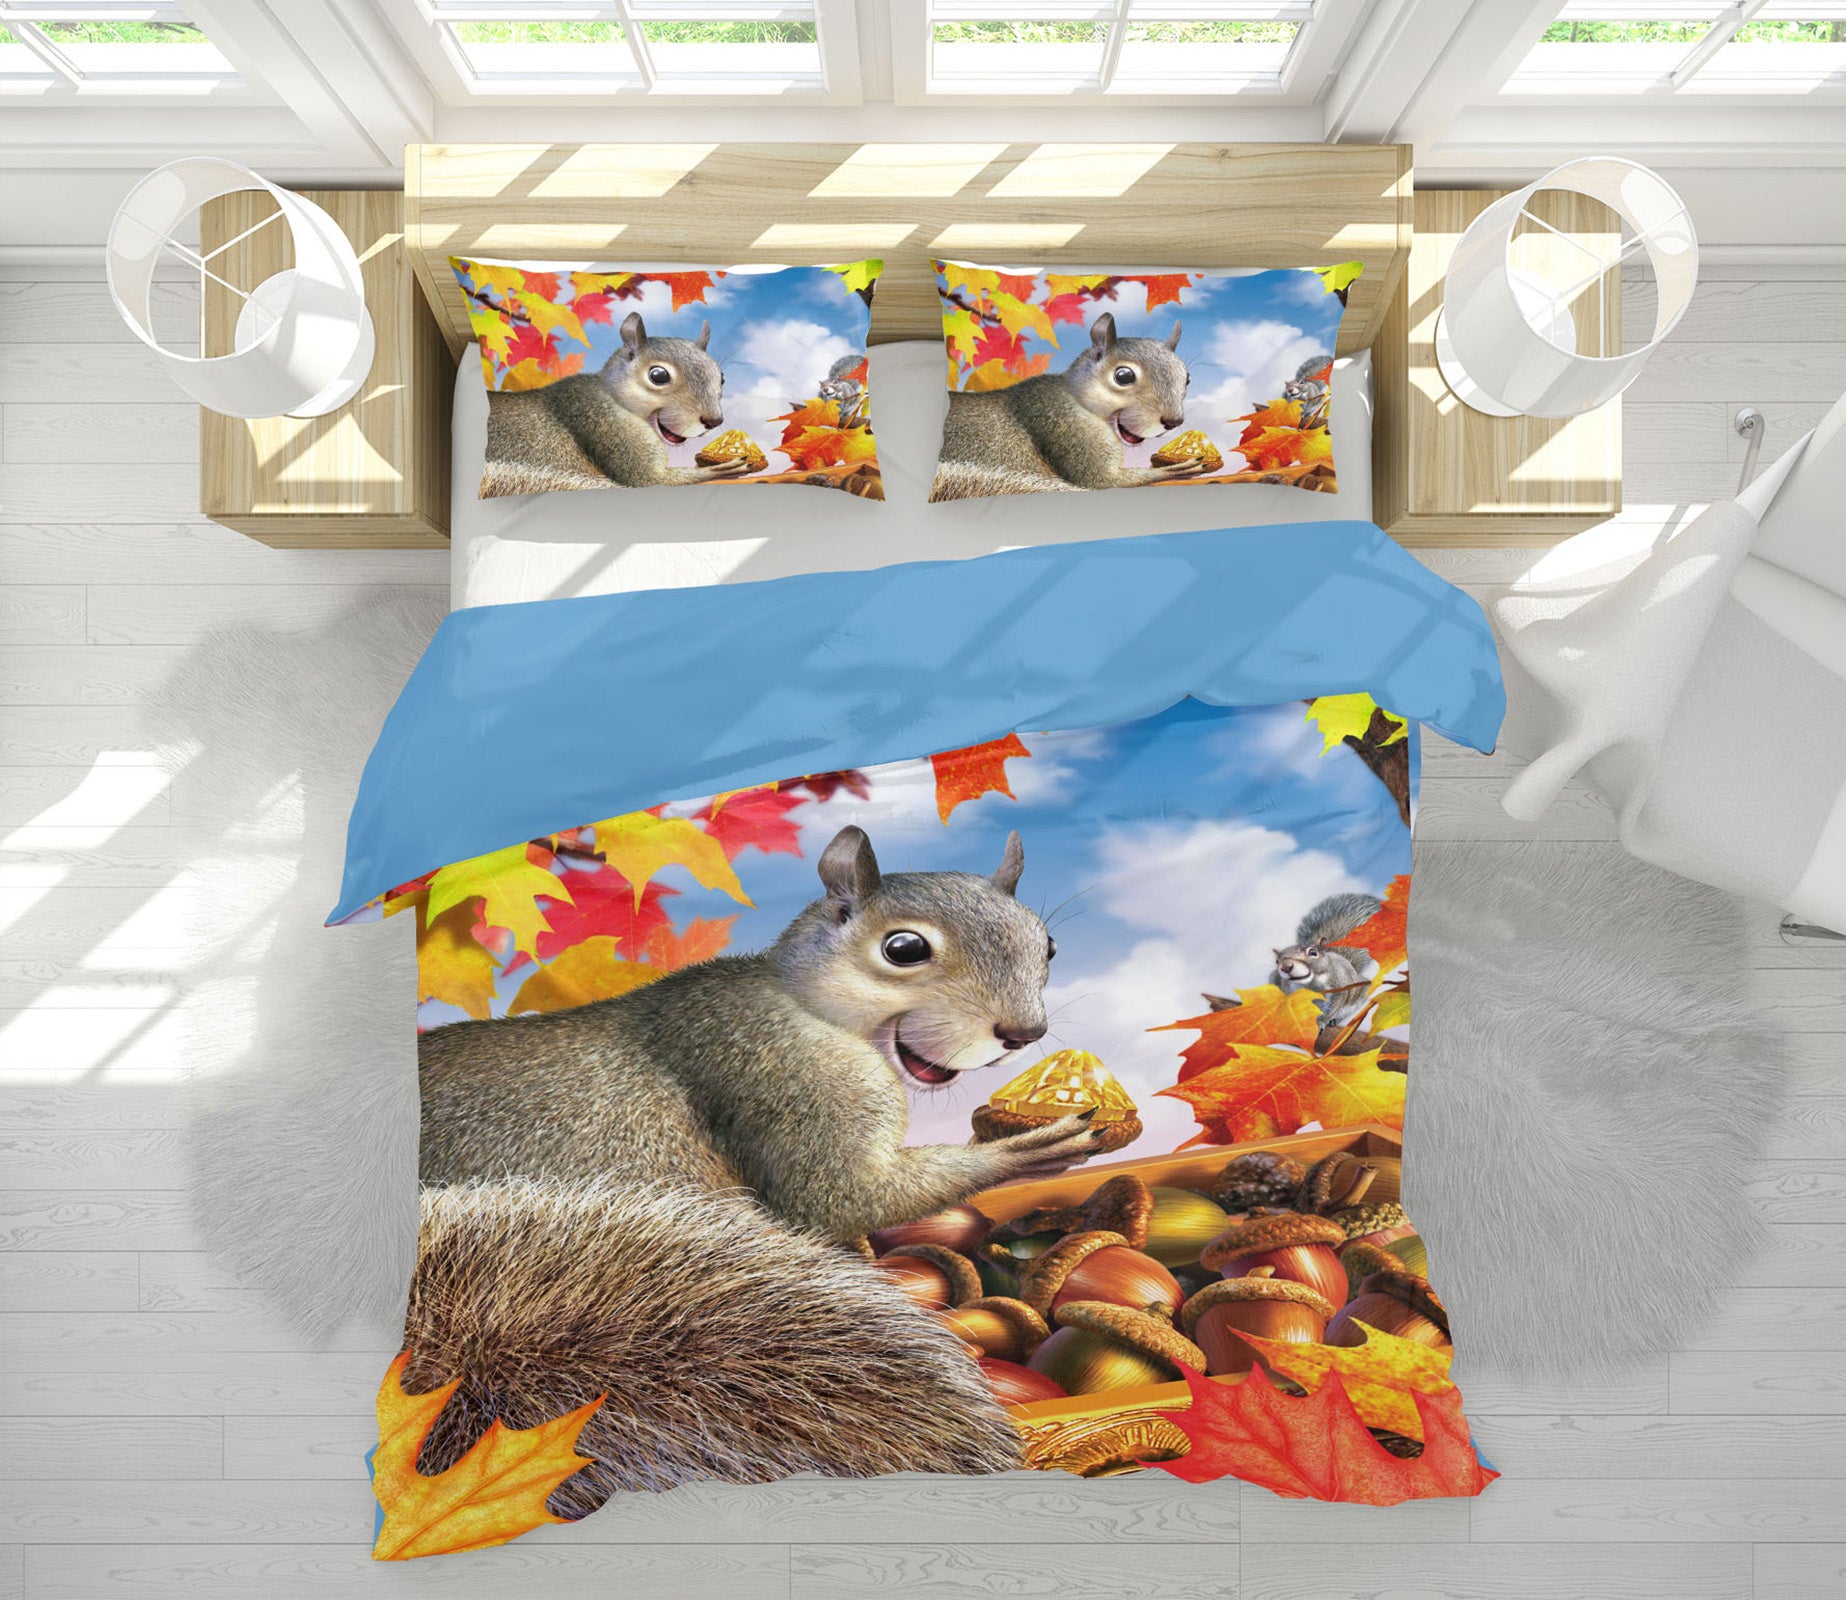 3D Squirrel Treasure 18070 Jerry LoFaro bedding Bed Pillowcases Quilt